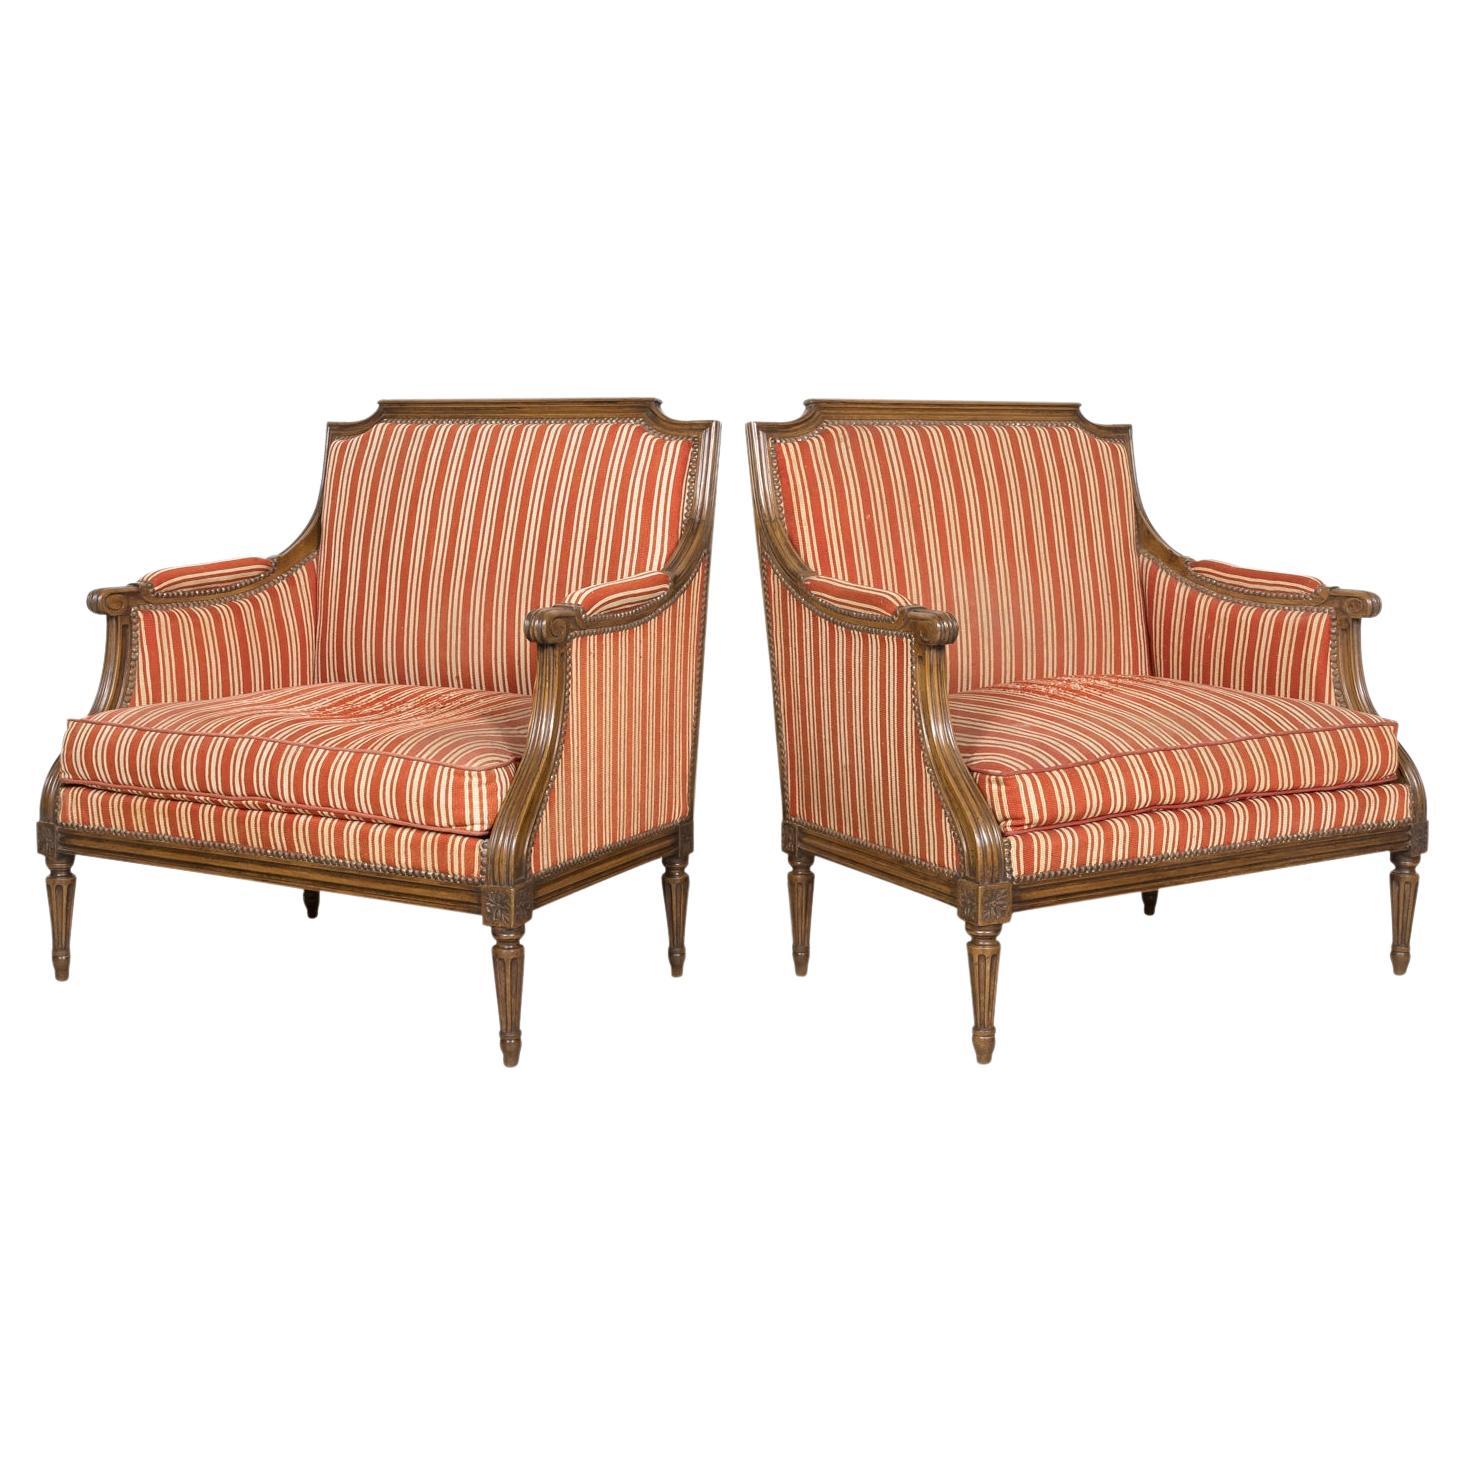 Paar übergroße französische Bergere-Marquise-Sessel im Louis-XVI.-Stil des 19. Jahrhunderts